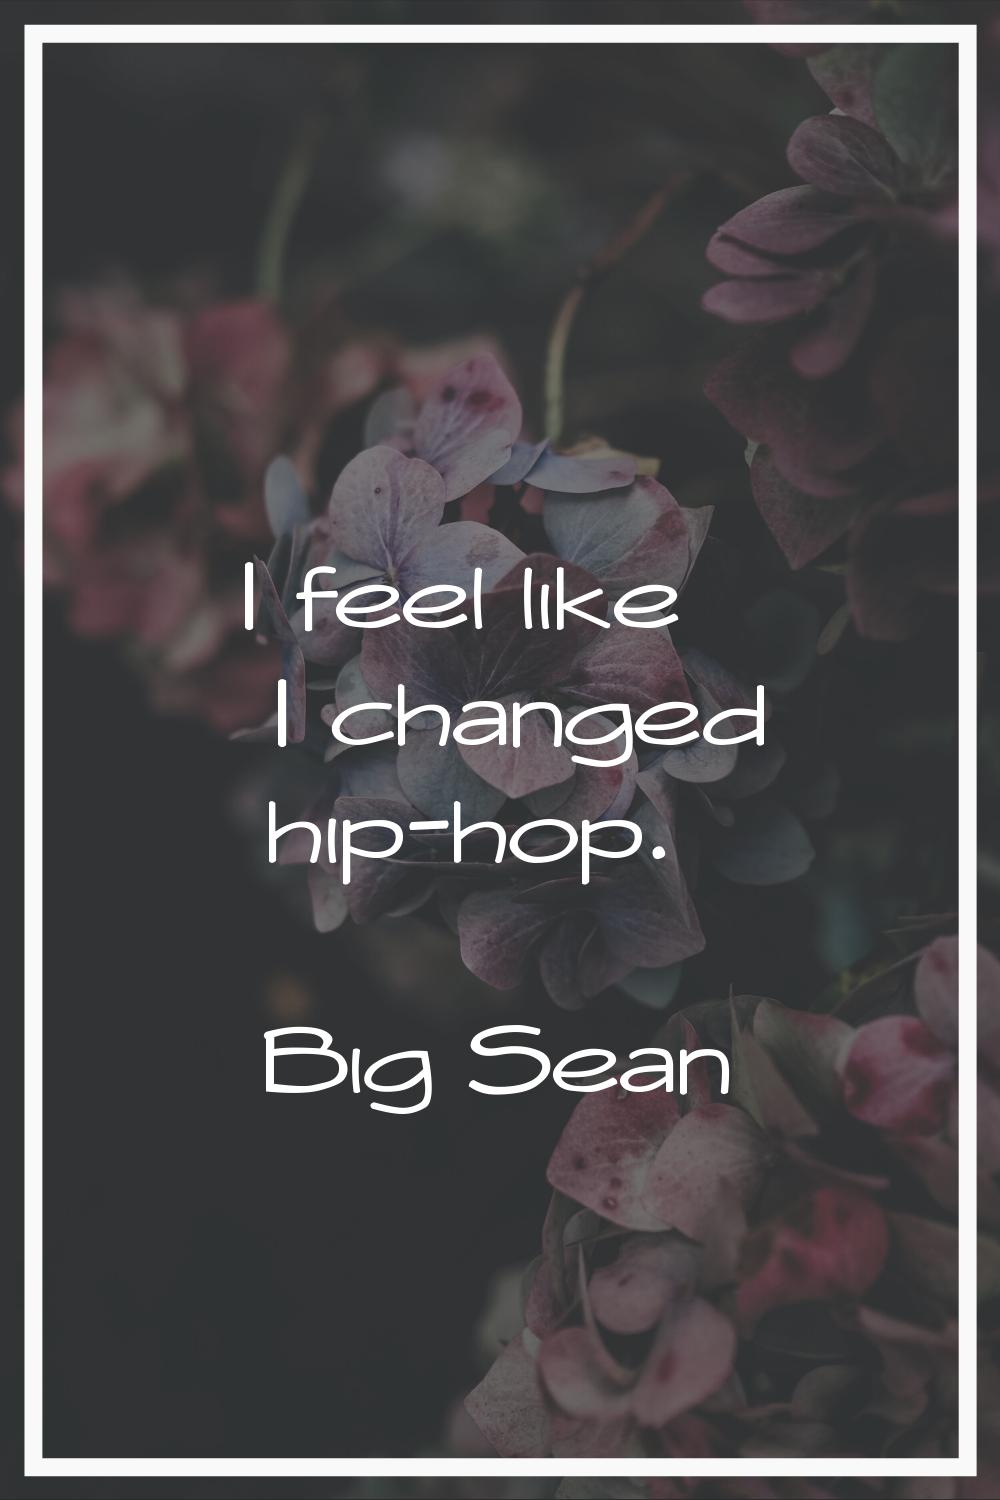 I feel like I changed hip-hop.